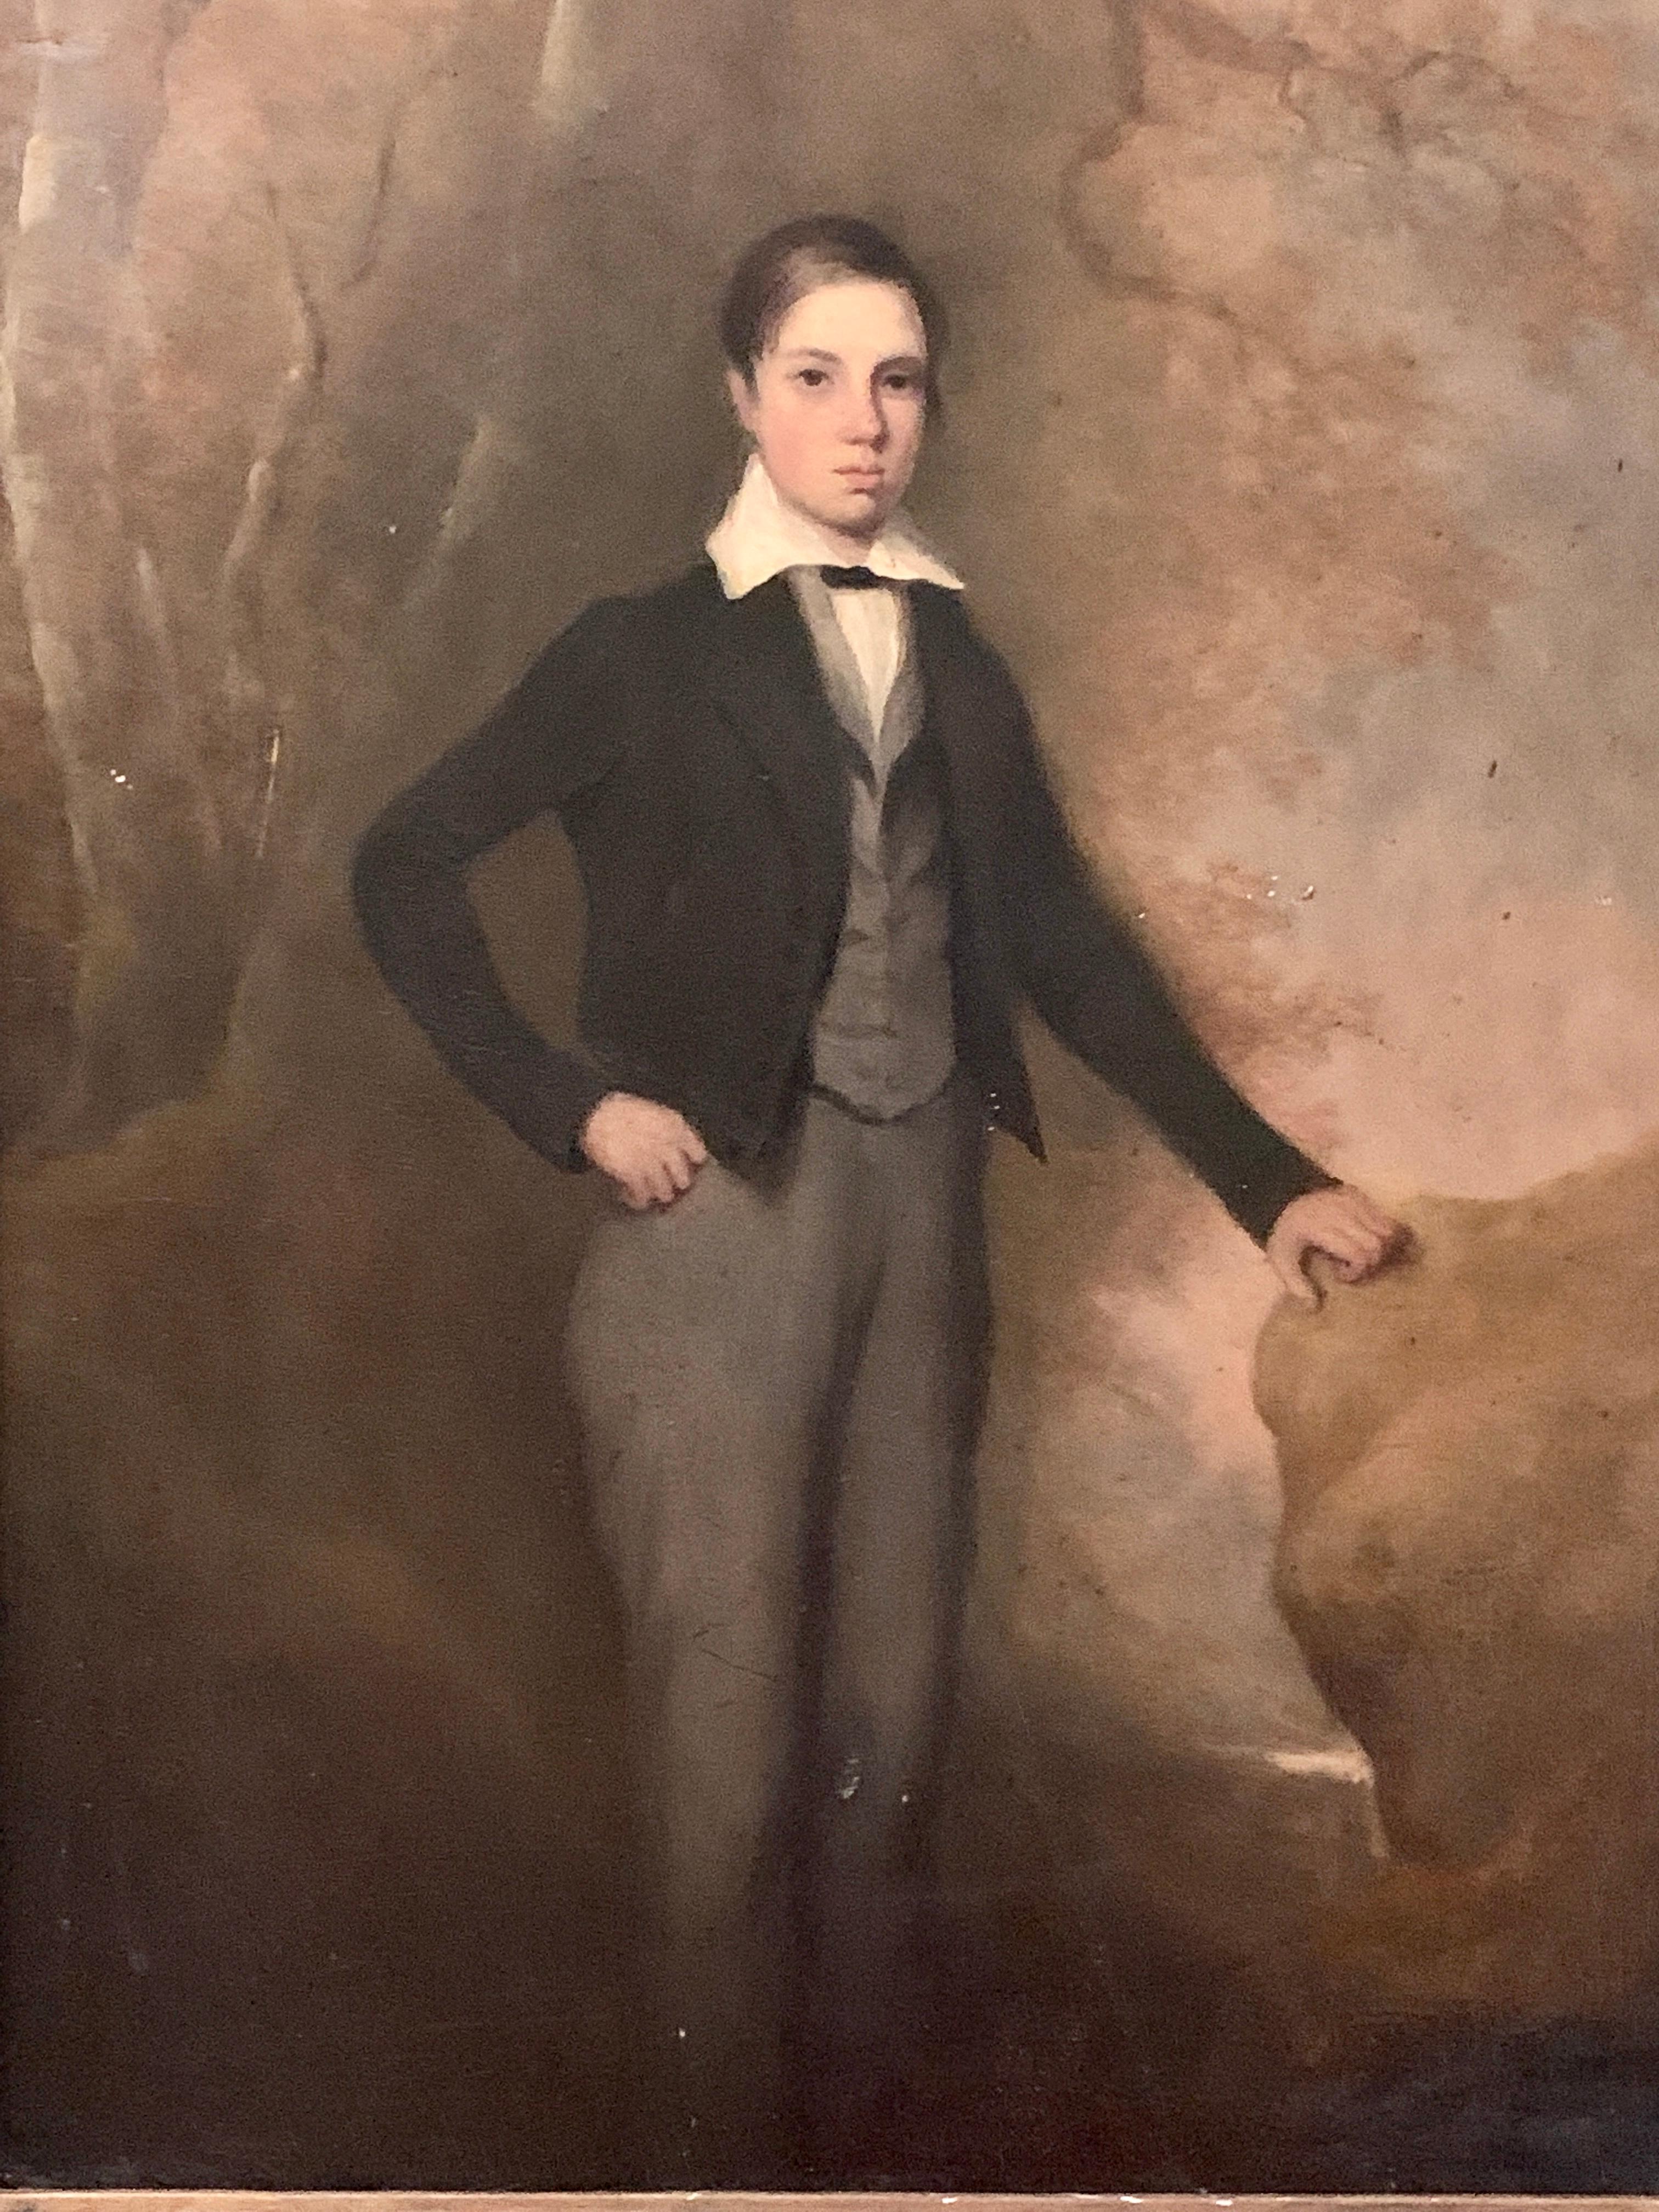 Portrait d'un jeune garçon écossais/britannique dans un uniforme d'école du XIXe siècle - Painting de 19th Century Scottish School